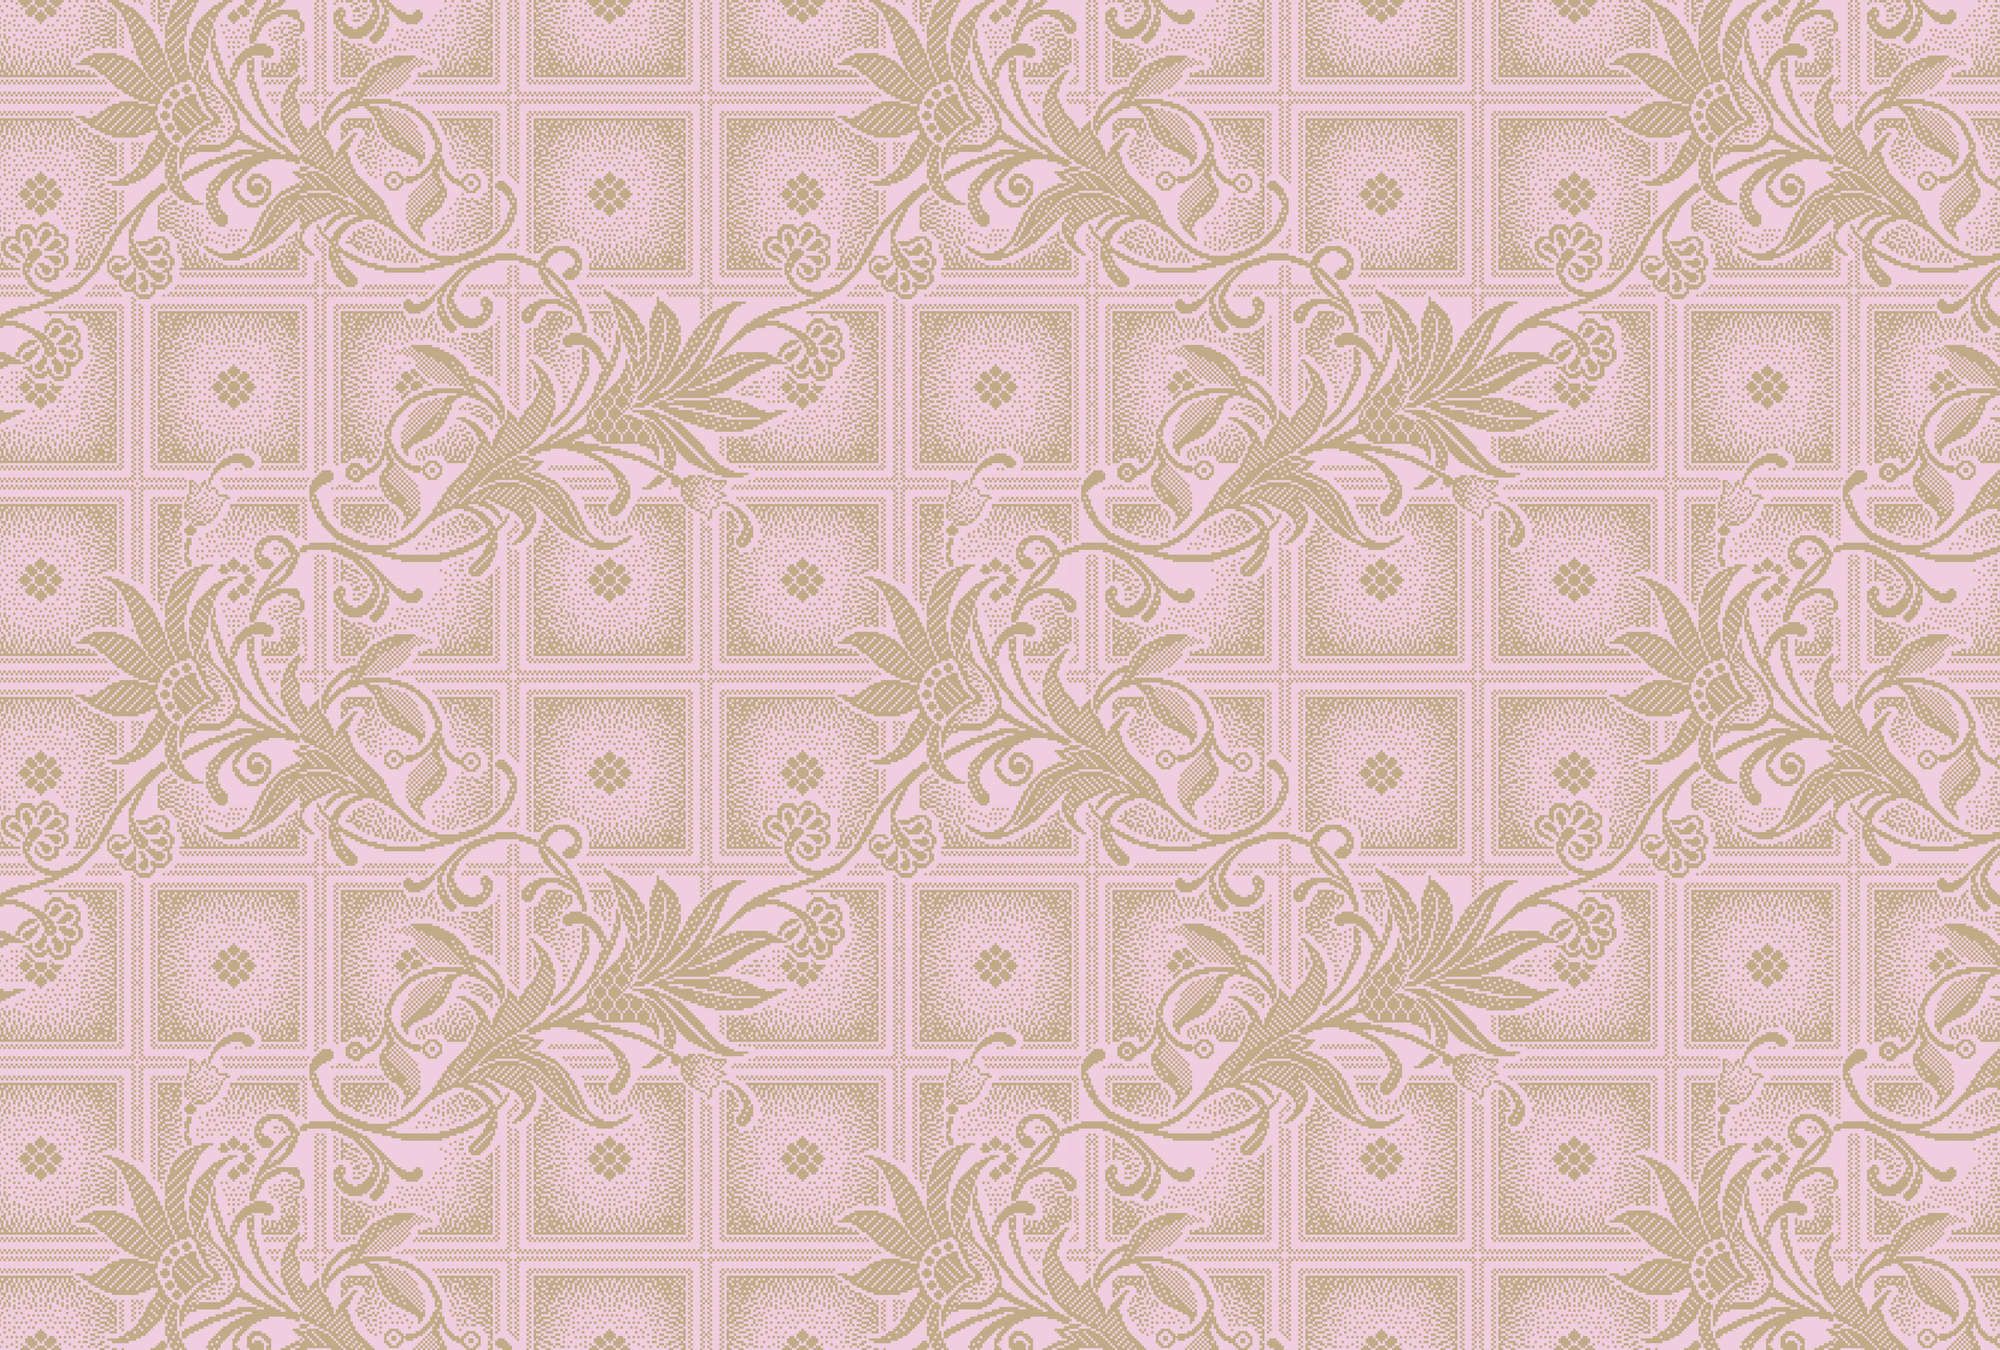             Fotomural »vivian« - Cuadrados estilo píxel con flores - Rosa | Tela no tejida lisa, ligeramente nacarada y brillante
        